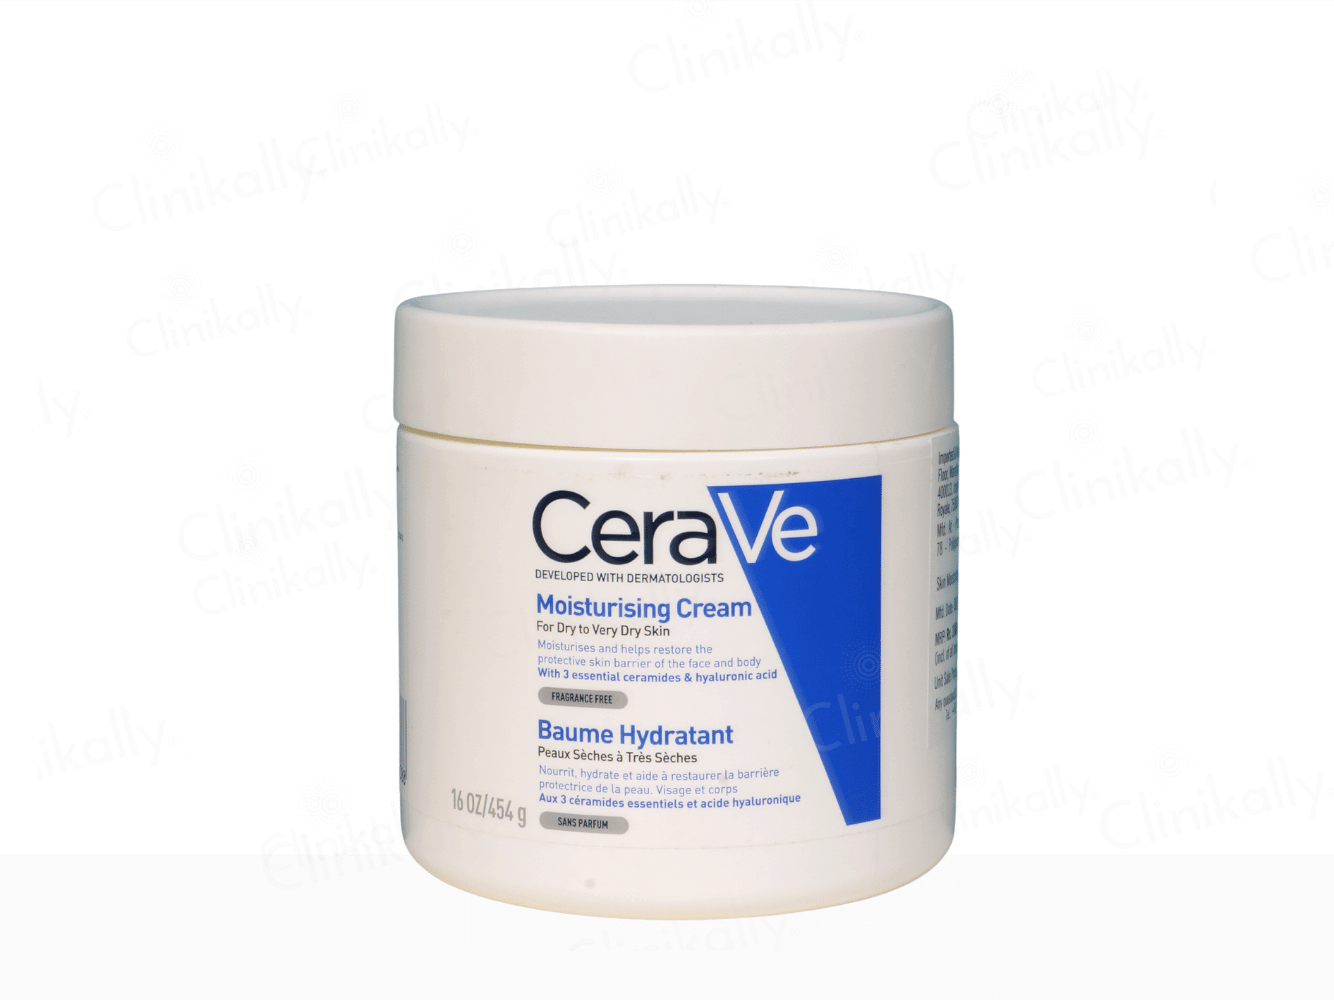 CeraVe Moisturising Cream for Dry to Very Dry Skin - Clinikally